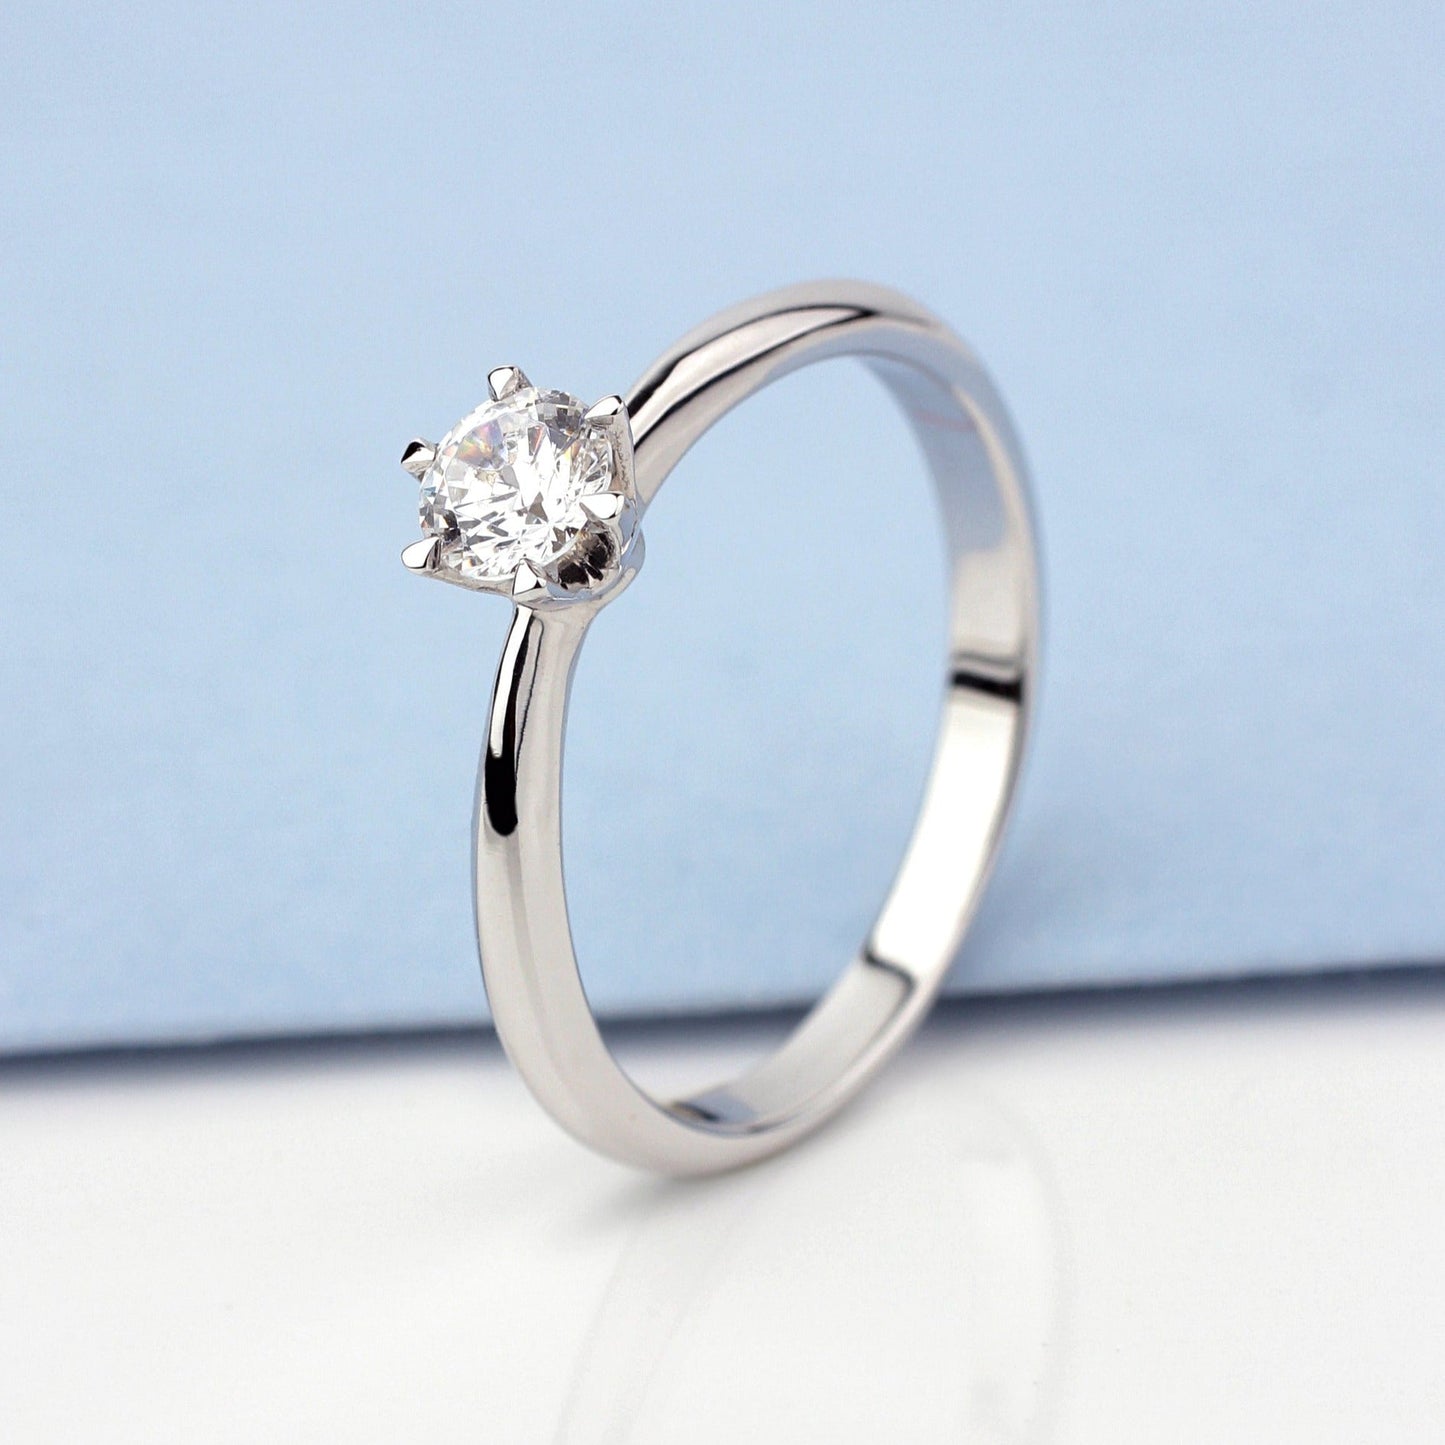 Solitaire diamond engagement ring - escorialjewelry